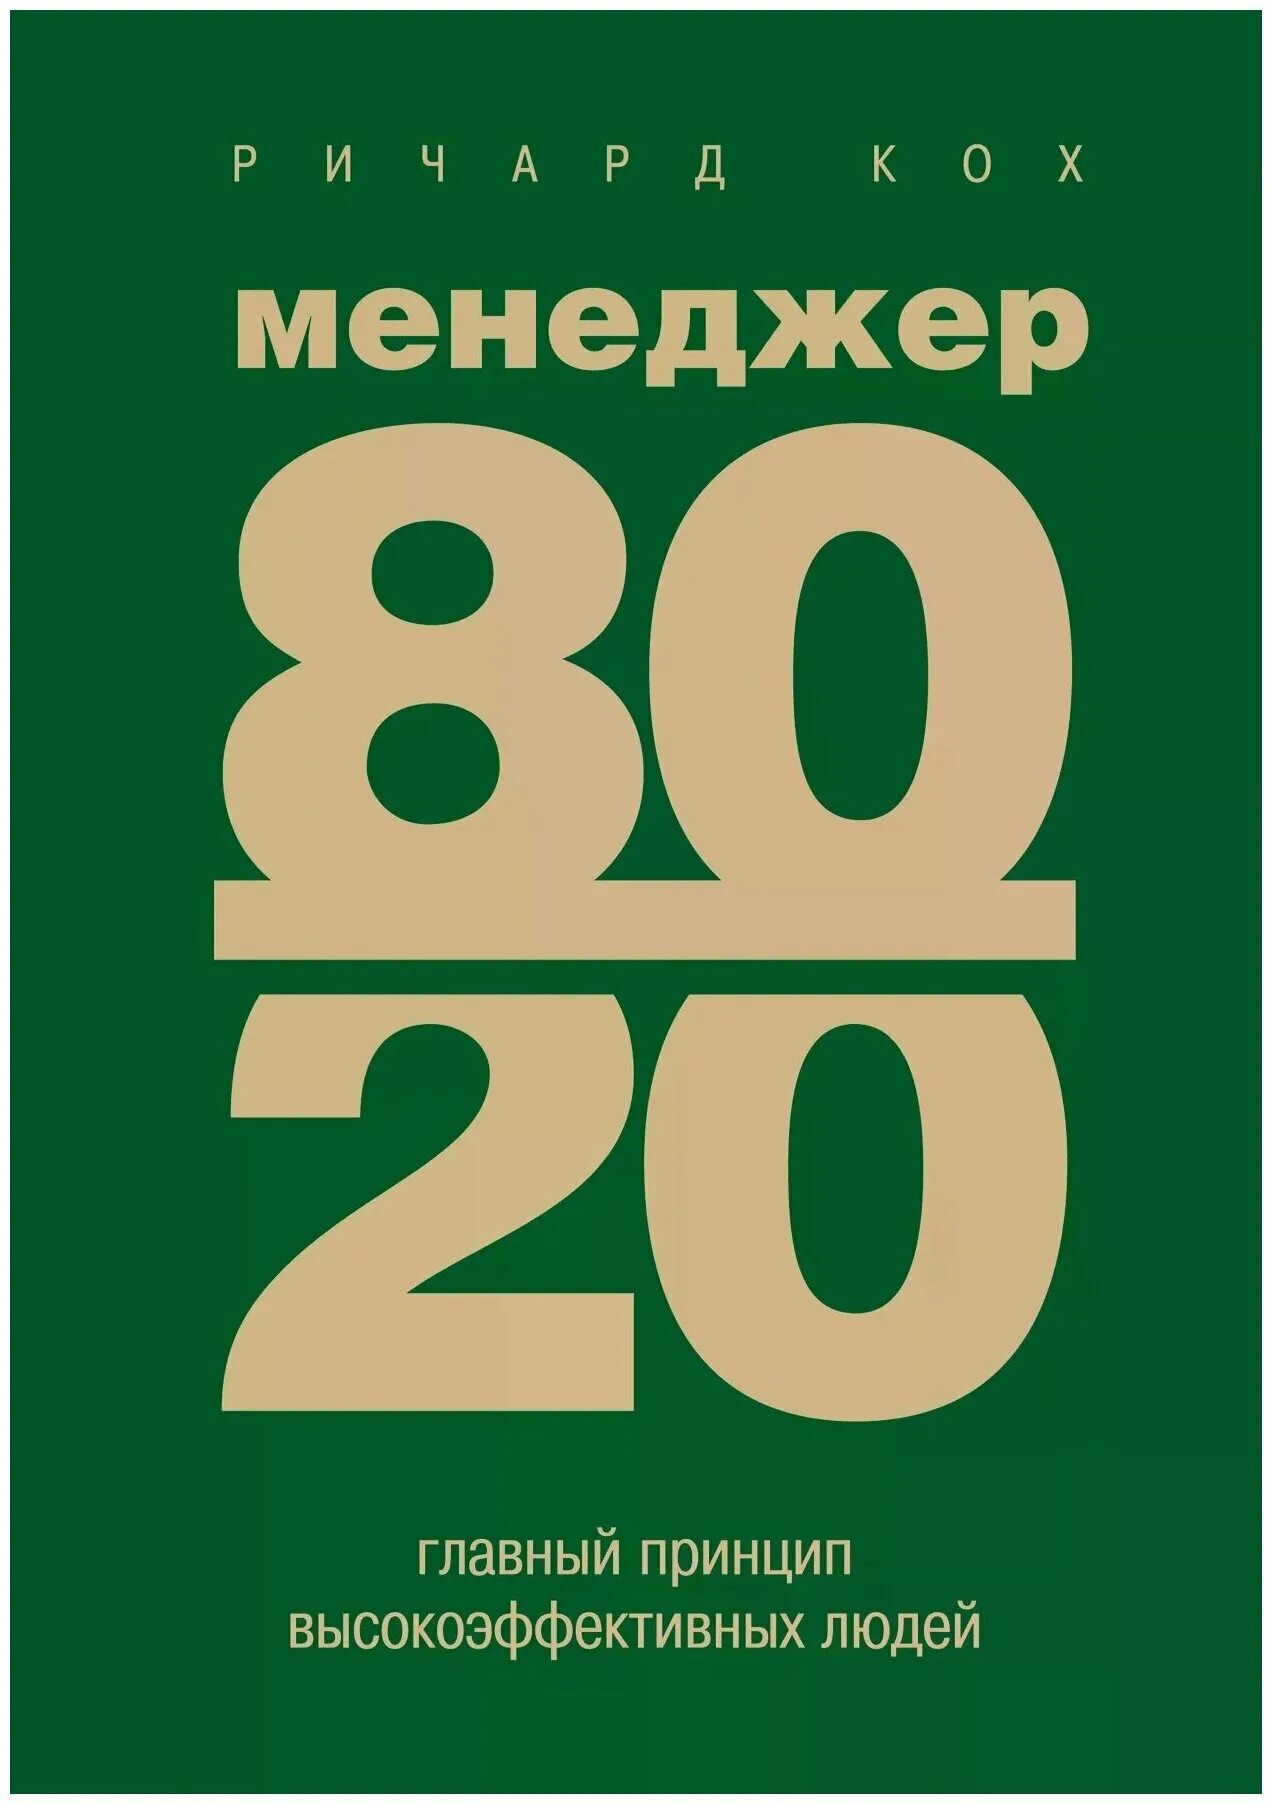 Книга принцип 80 20. Менеджер 80/20 : главный принцип высокоэффективных людей.